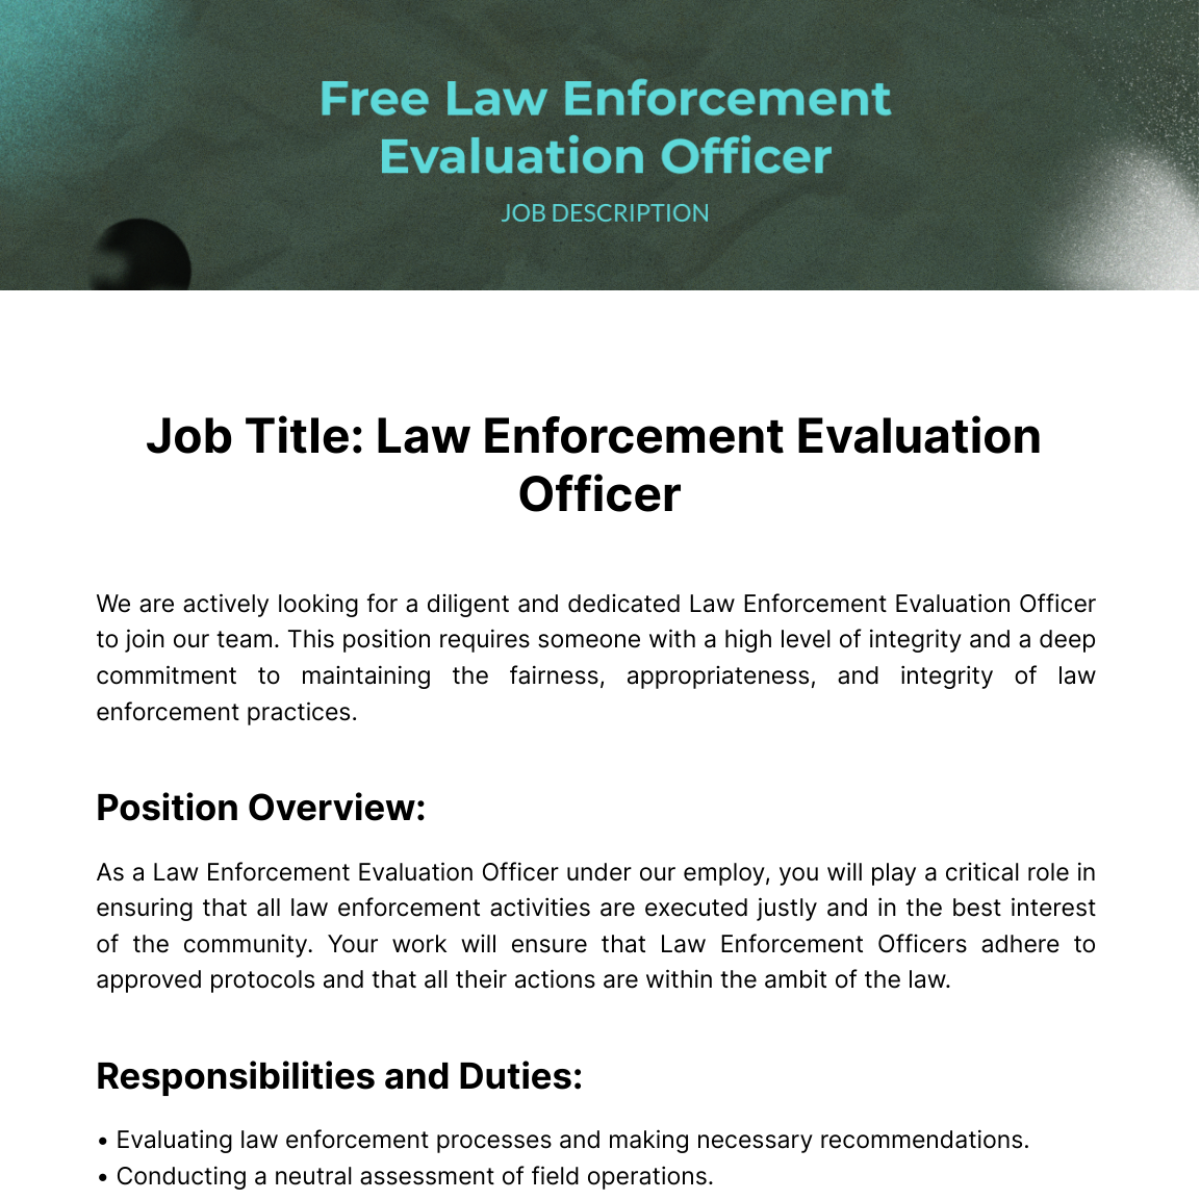 Free Law Enforcement Evaluation Officer Job Description Template